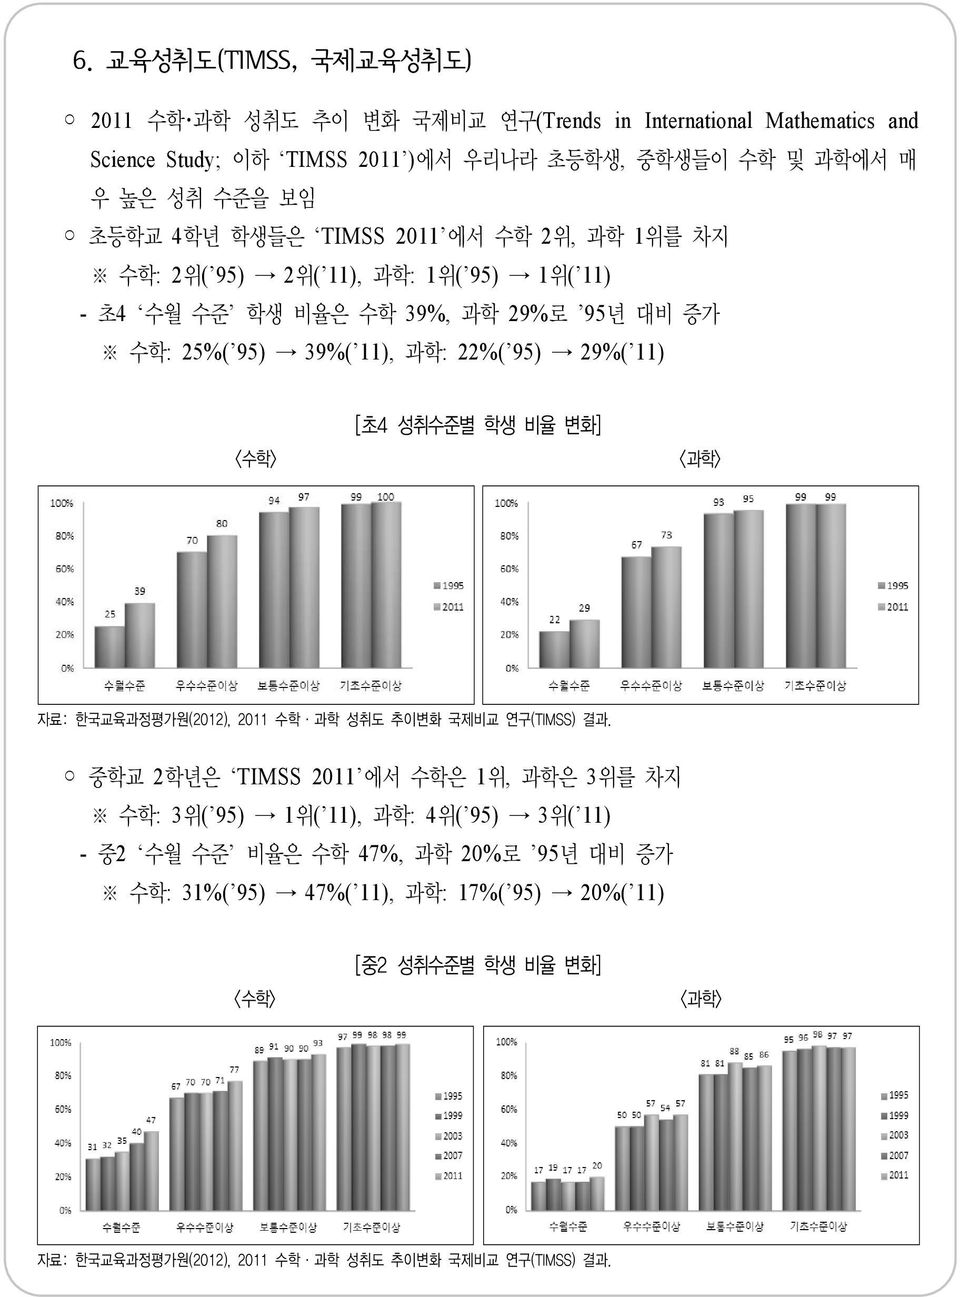 11) <수학> [초4 성취수준별 학생 비율 변화] <과학> 자료: 한국교육과정평가원(2012), 2011 수학 과학 성취도 추이변화 국제비교 연구(TIMSS) 결과.